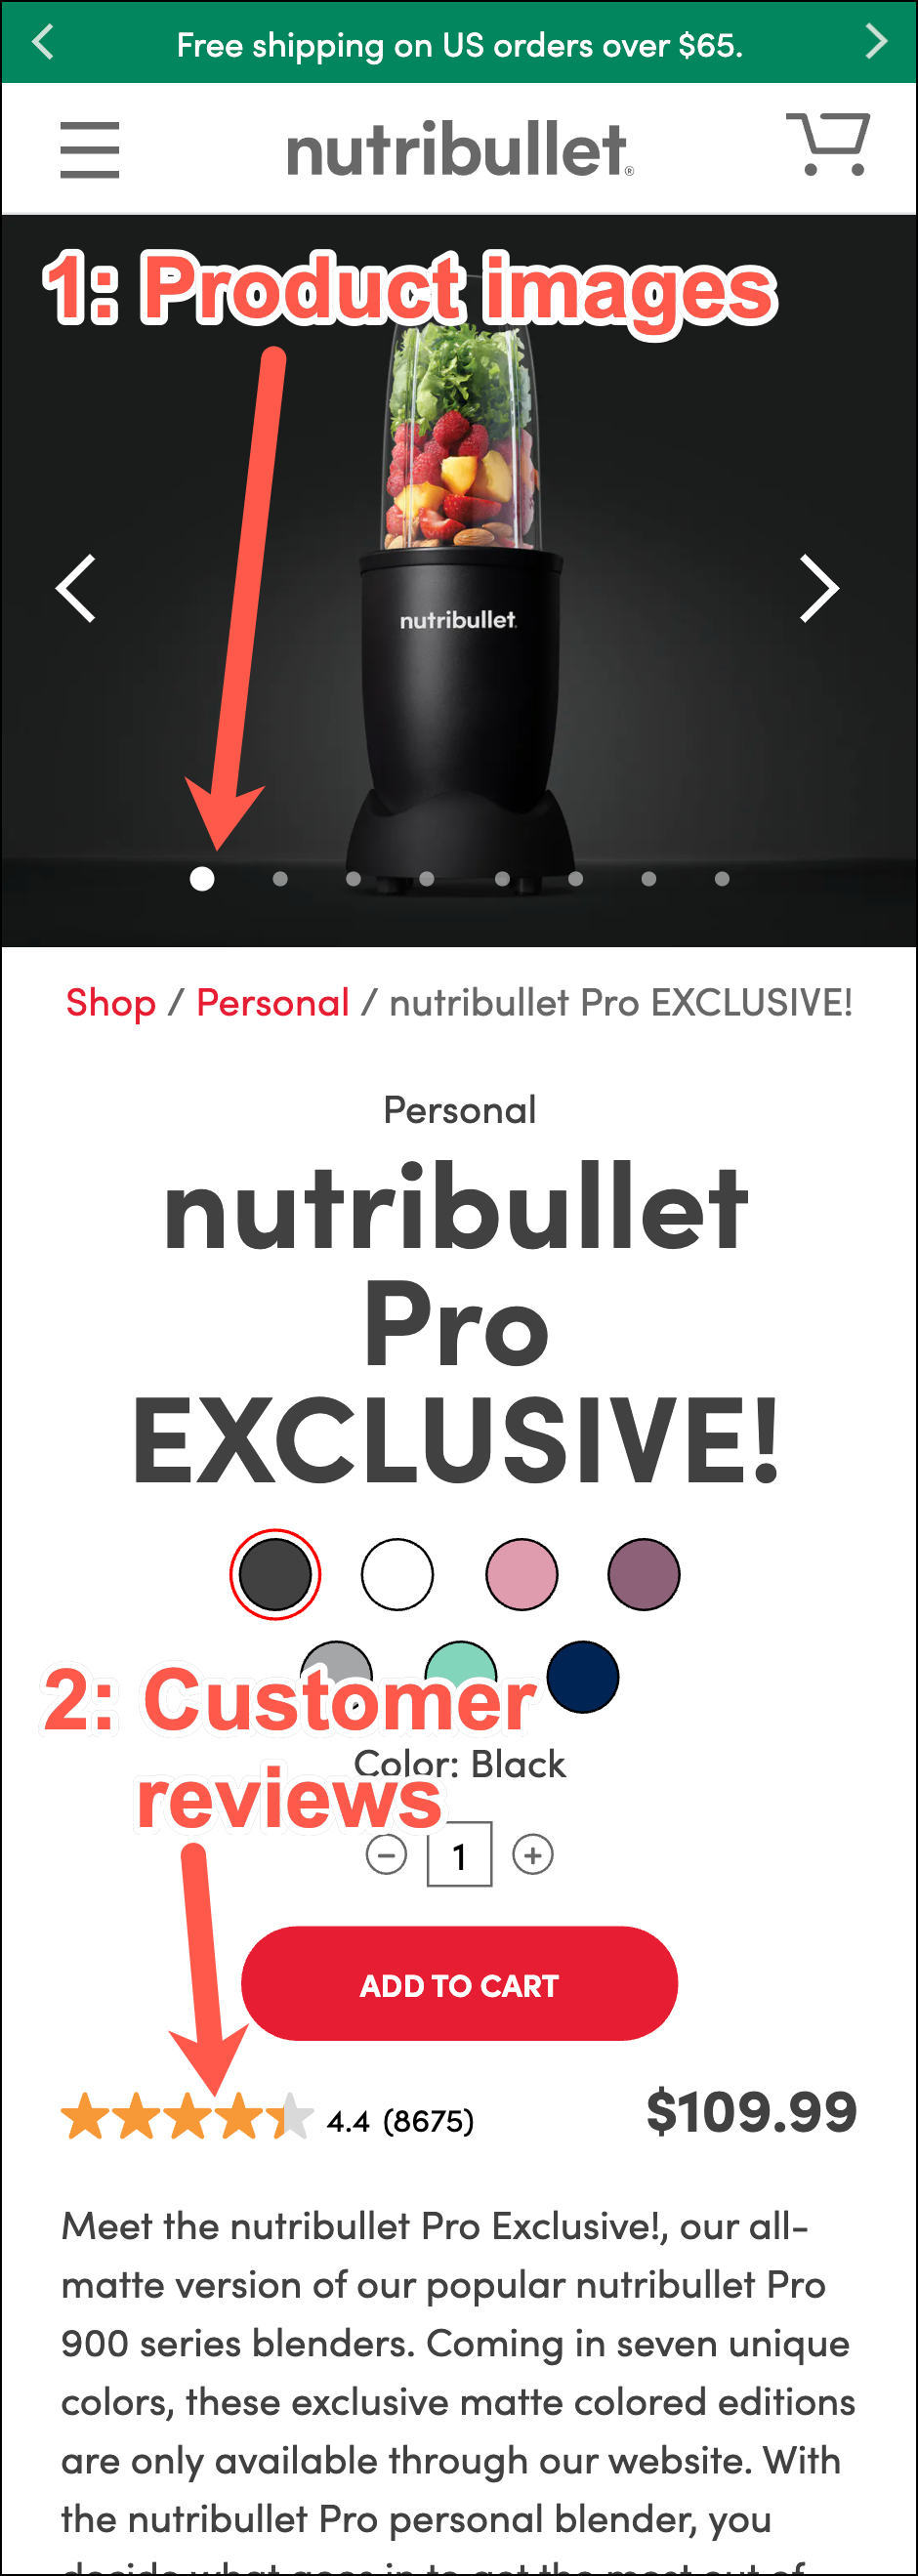 Nutribullet.com Shopify Product Description